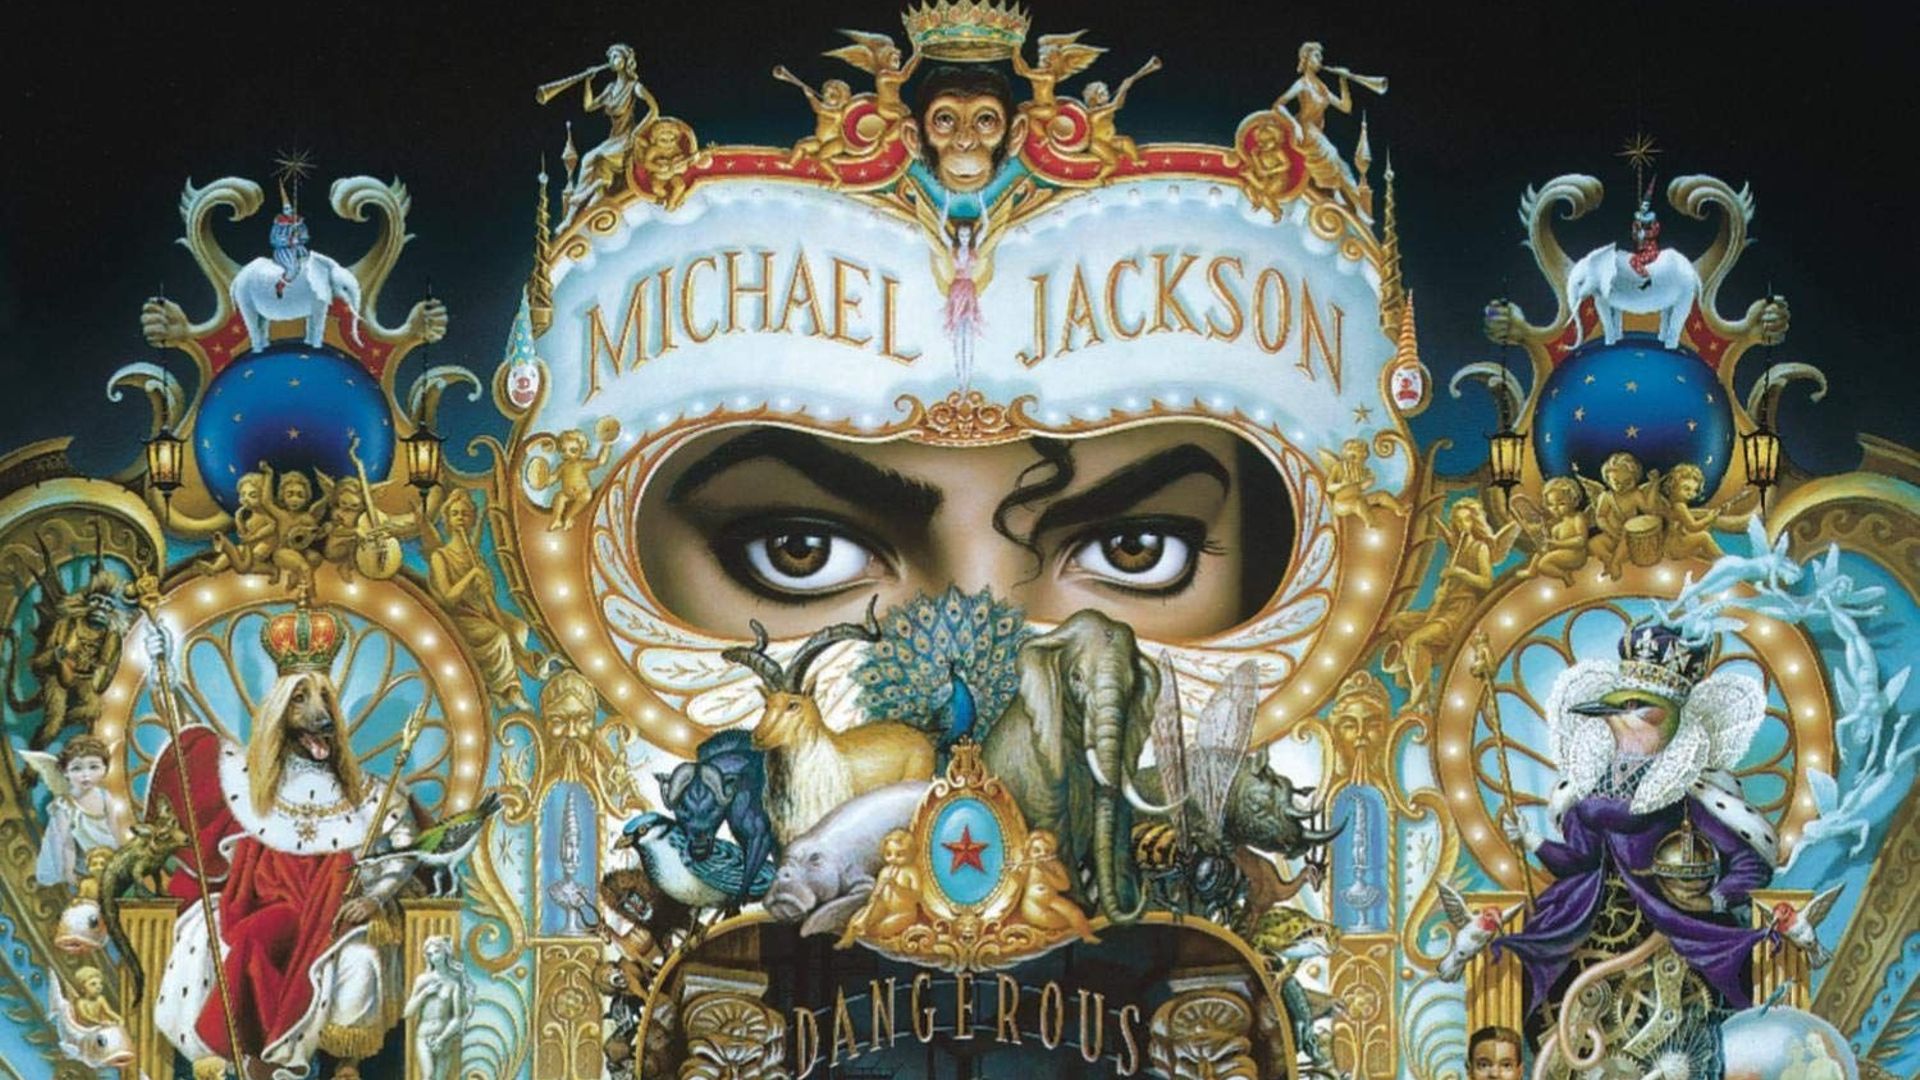 La pochette iconique de "Dangerous" de Michael Jackson a 30 ans.